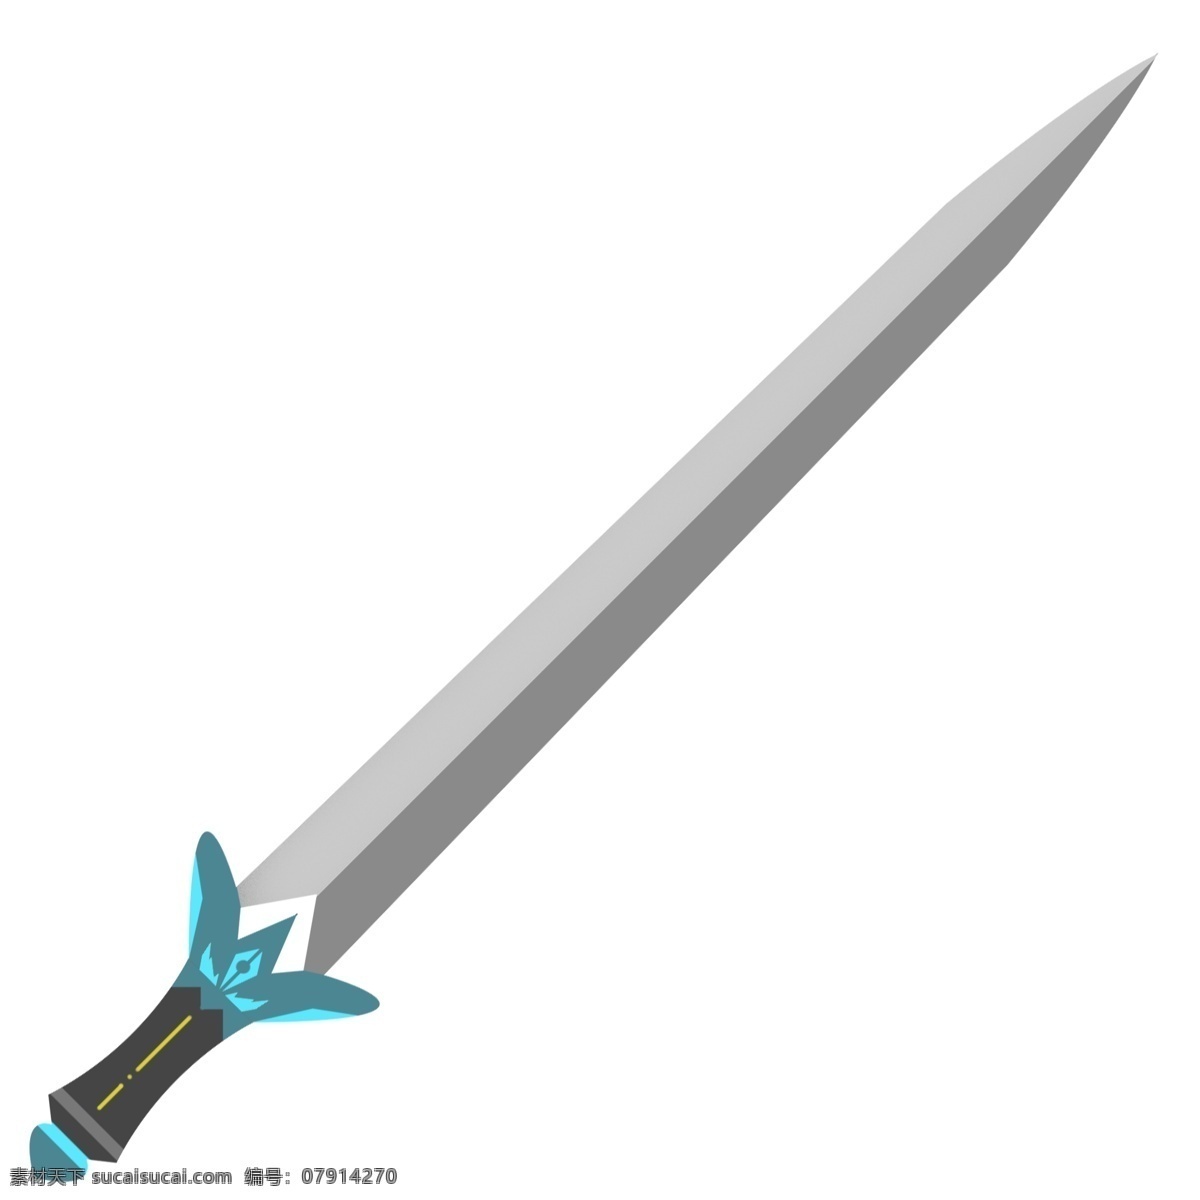 一把 剑锋 利箭 插画 长剑插图 银色短剑 时尚的短剑 卡通短剑插画 道具武器 一把剑插画 锋利箭插画